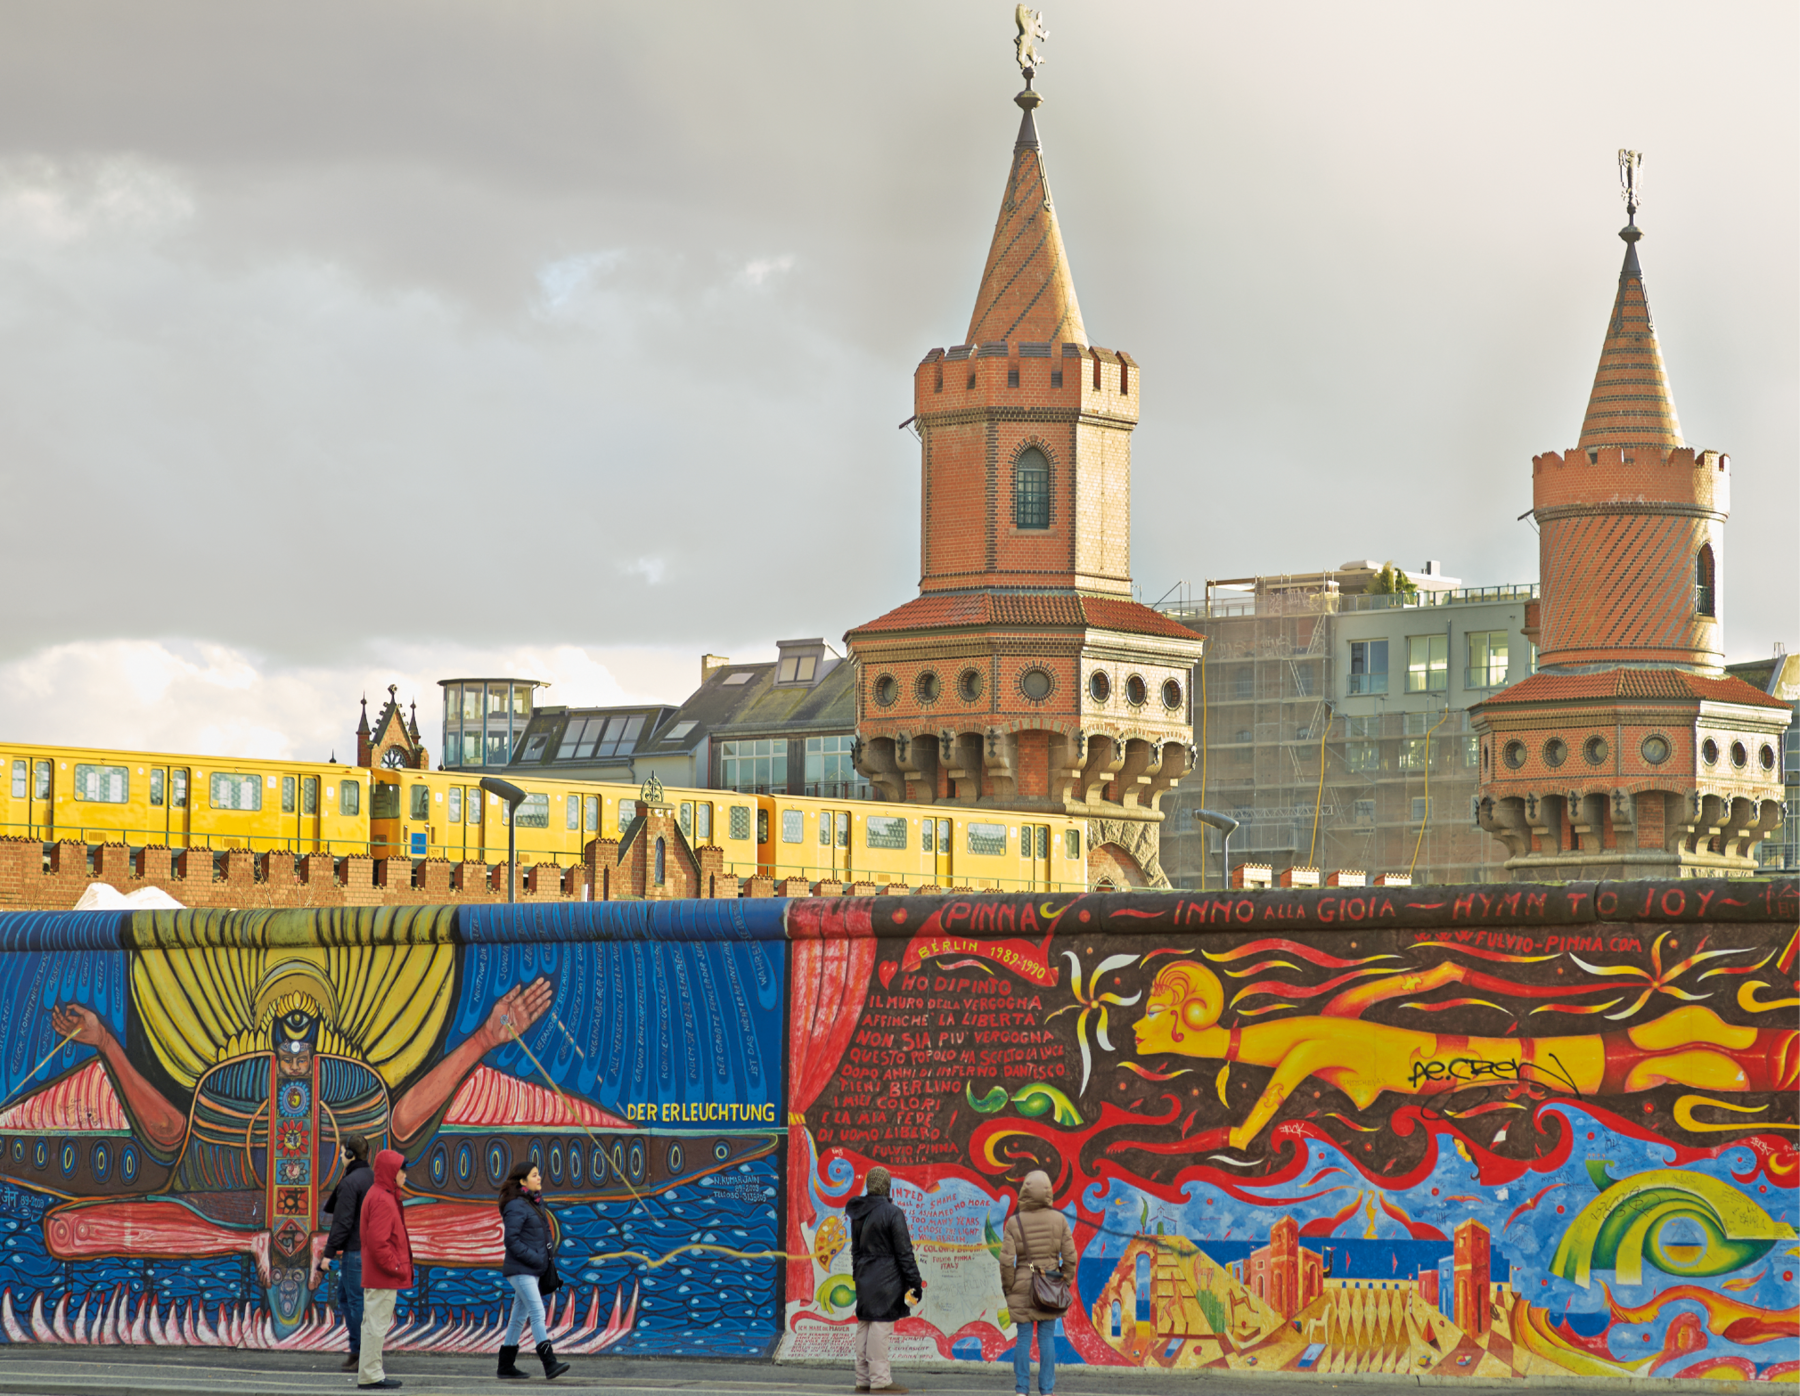 Fotografia. Pessoas observando desenhos e grafites coloridos em uma parte do Muro de Berlim. Ao fundo, atrás do muro, duas torres e prédios.